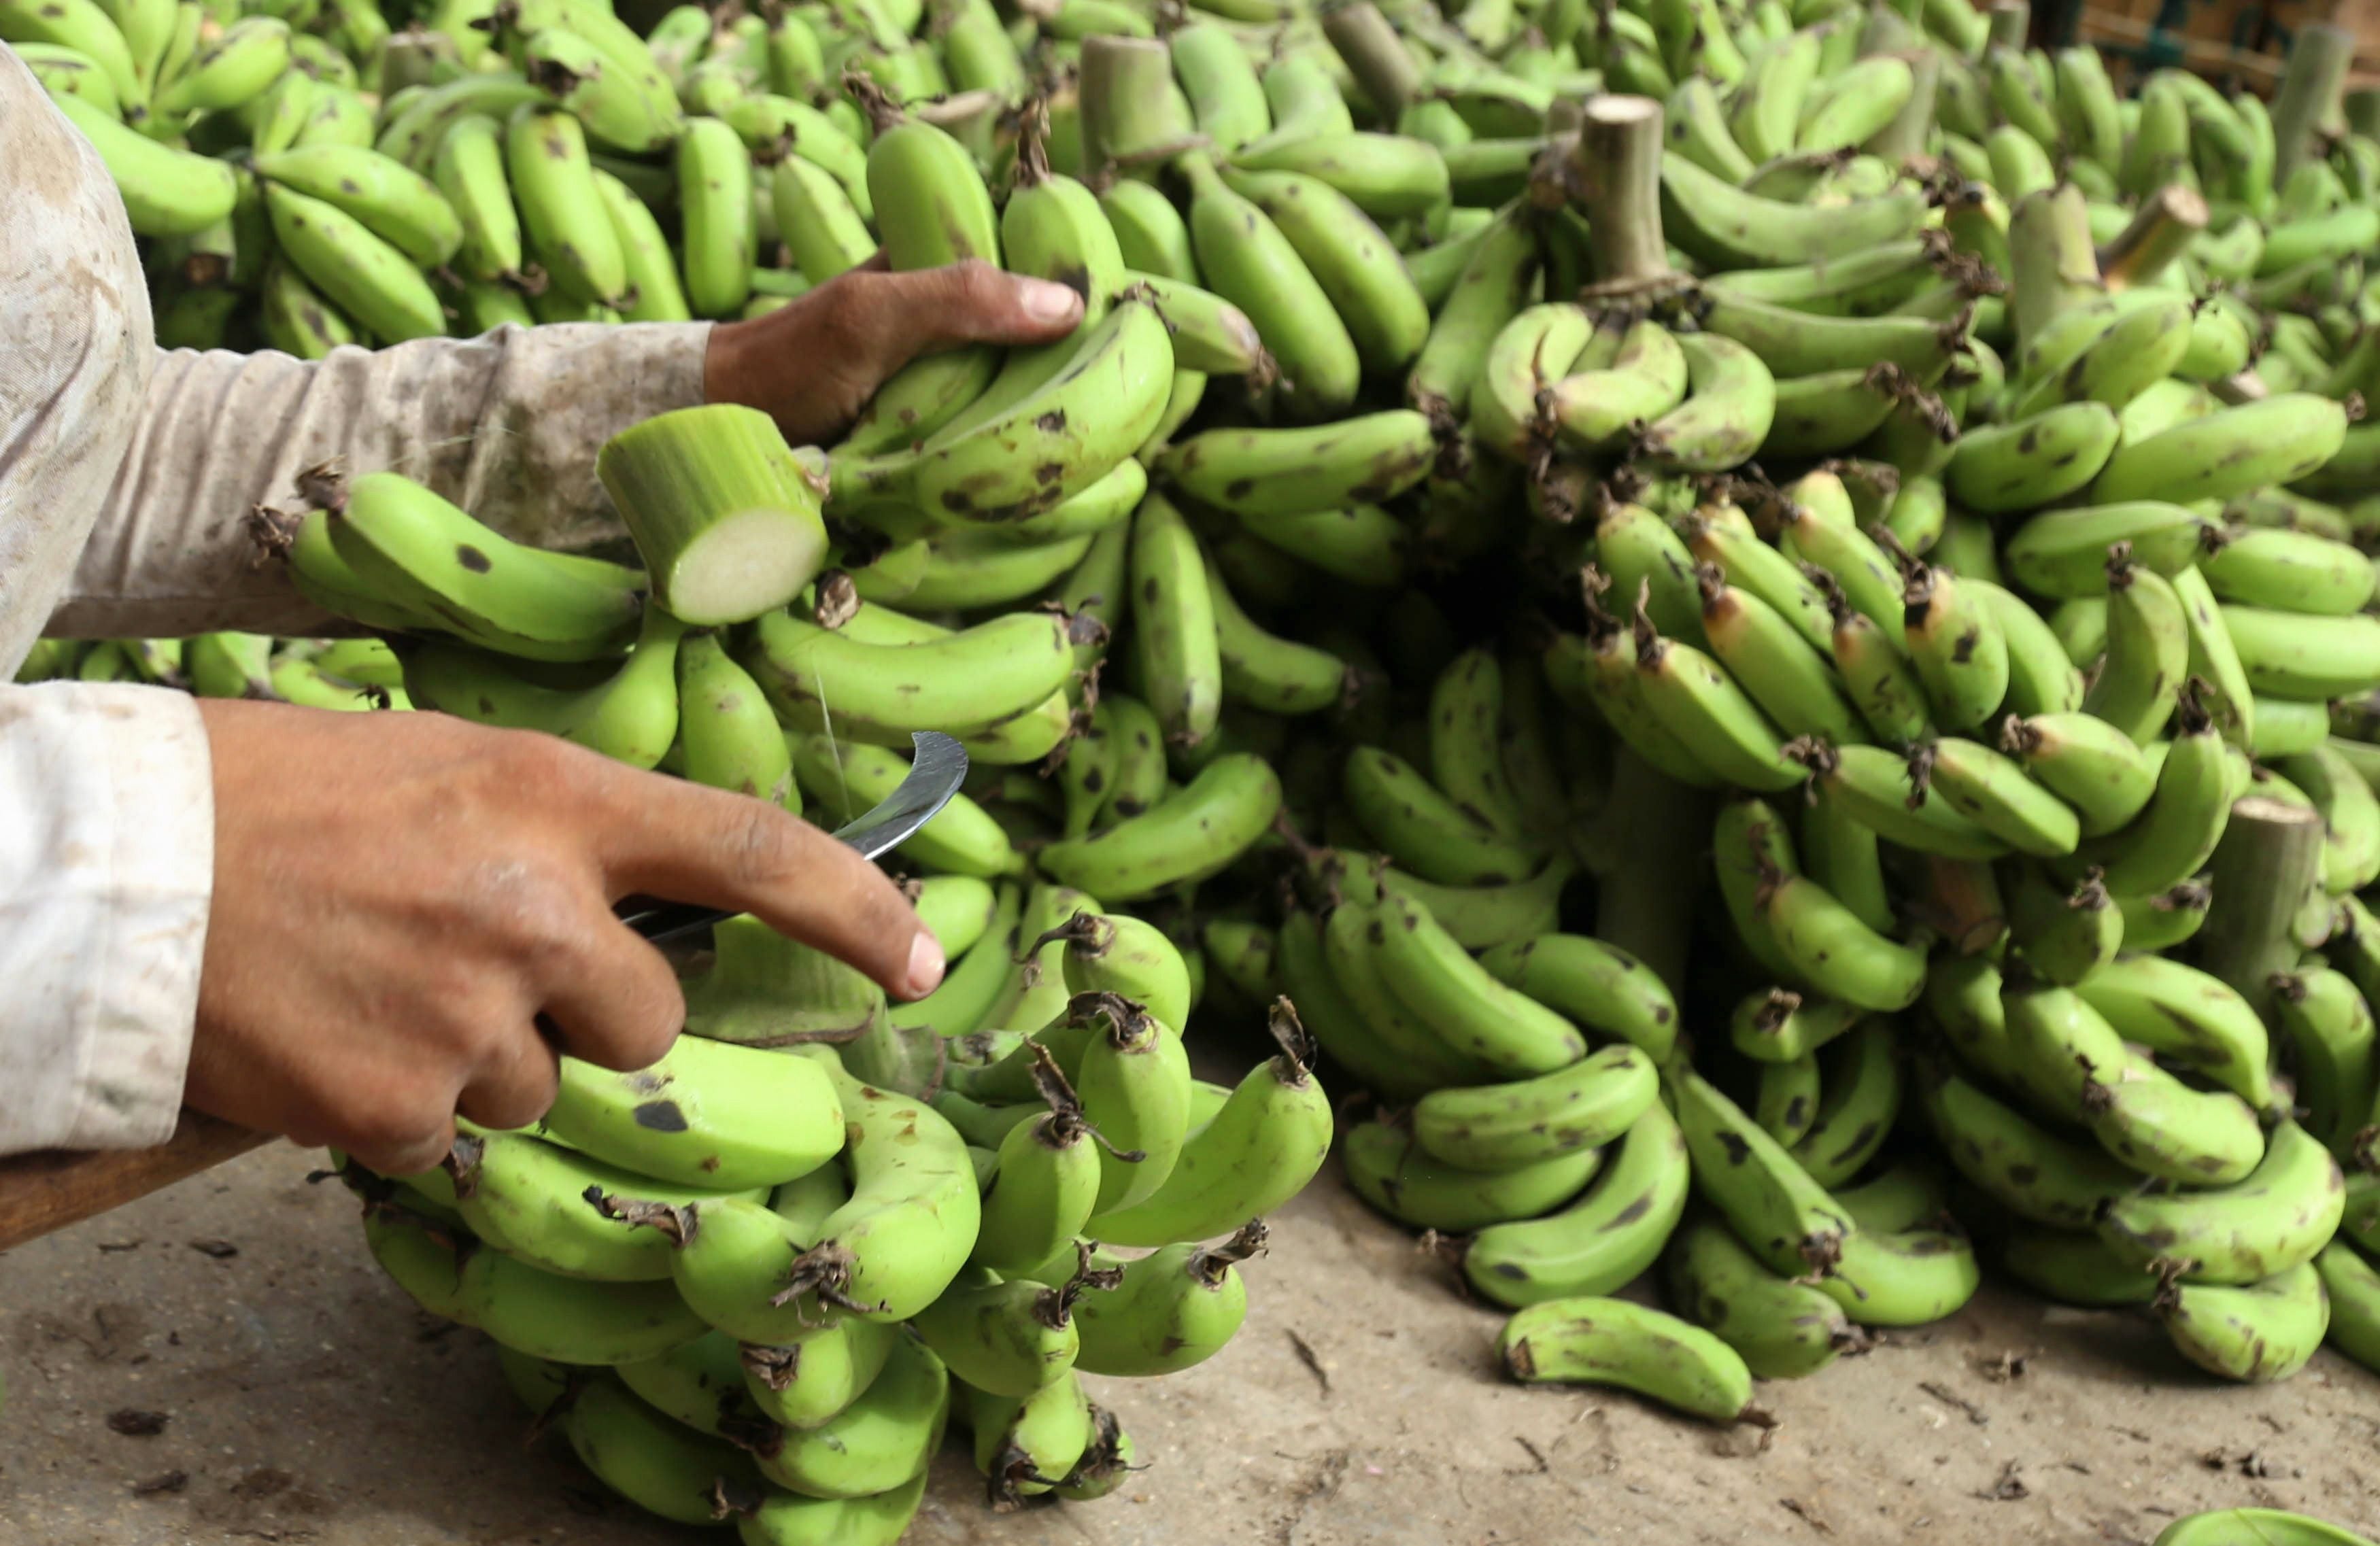 La droga se esconde en contenedores de banano, uno de los productos más exportados desde Ecuador (EFE/Rehan Khan)
